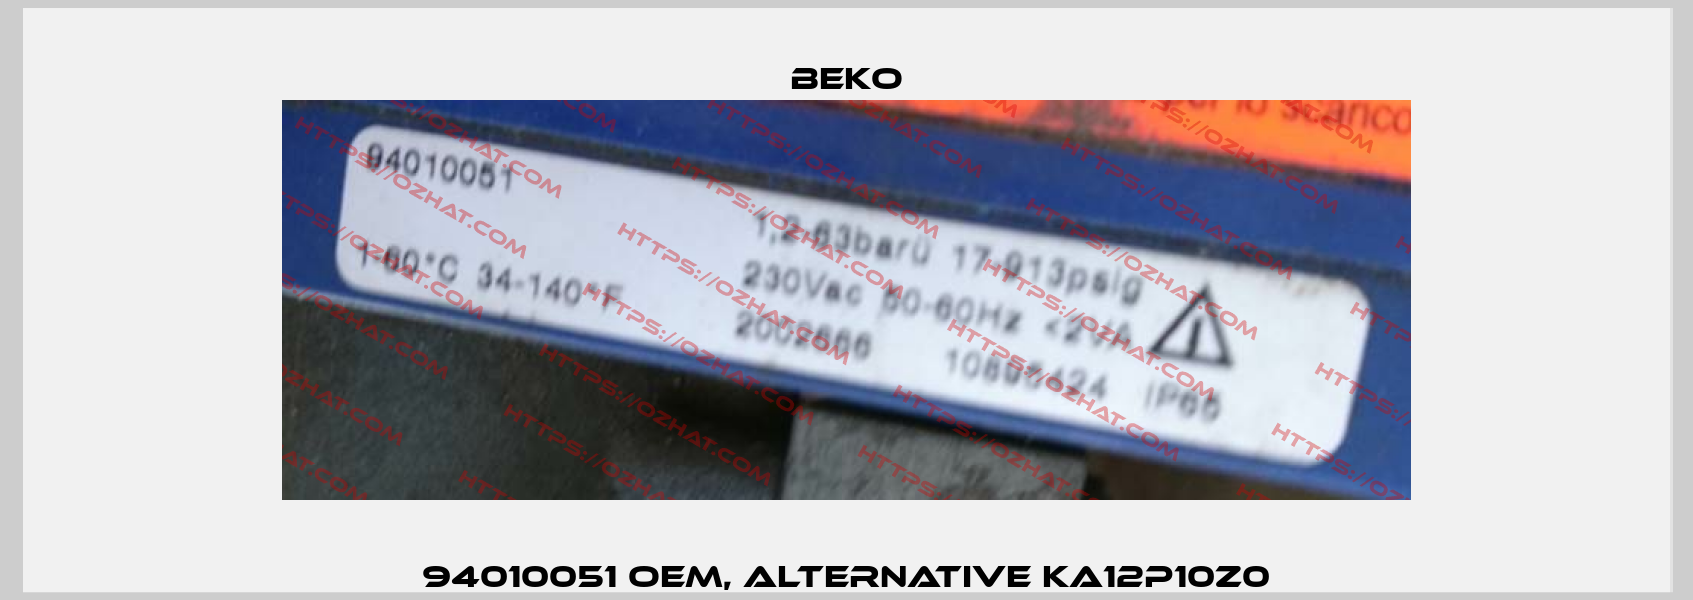 94010051 OEM, alternative KA12P10Z0 Beko